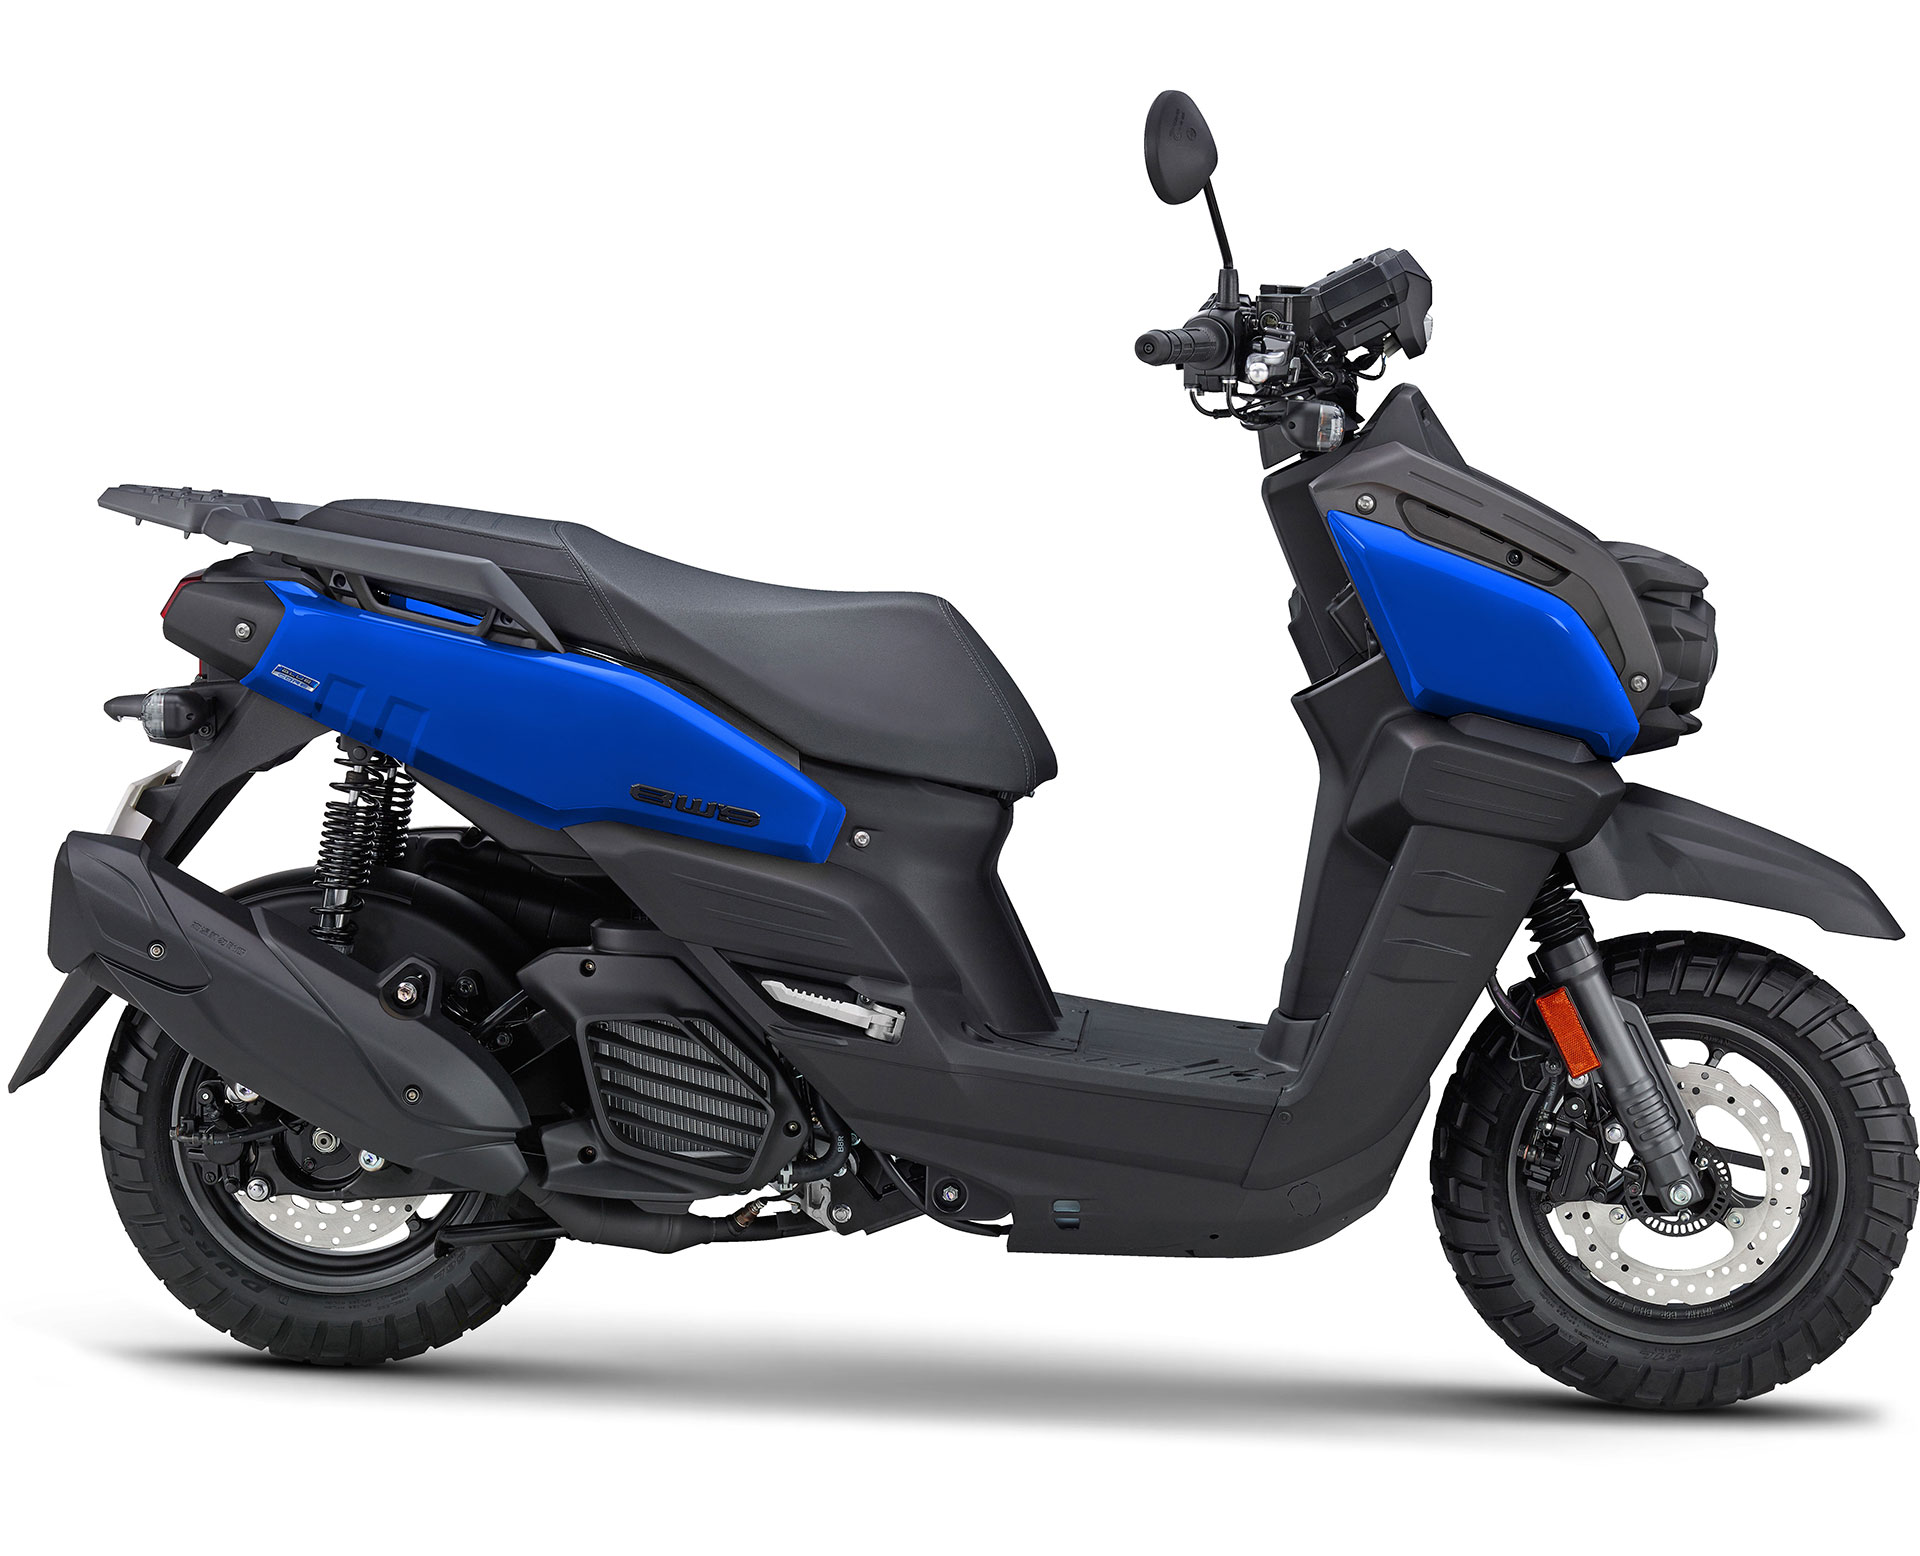 Housse de selle Yamaha PW 50 origine bleue et noire – Pièce mini moto